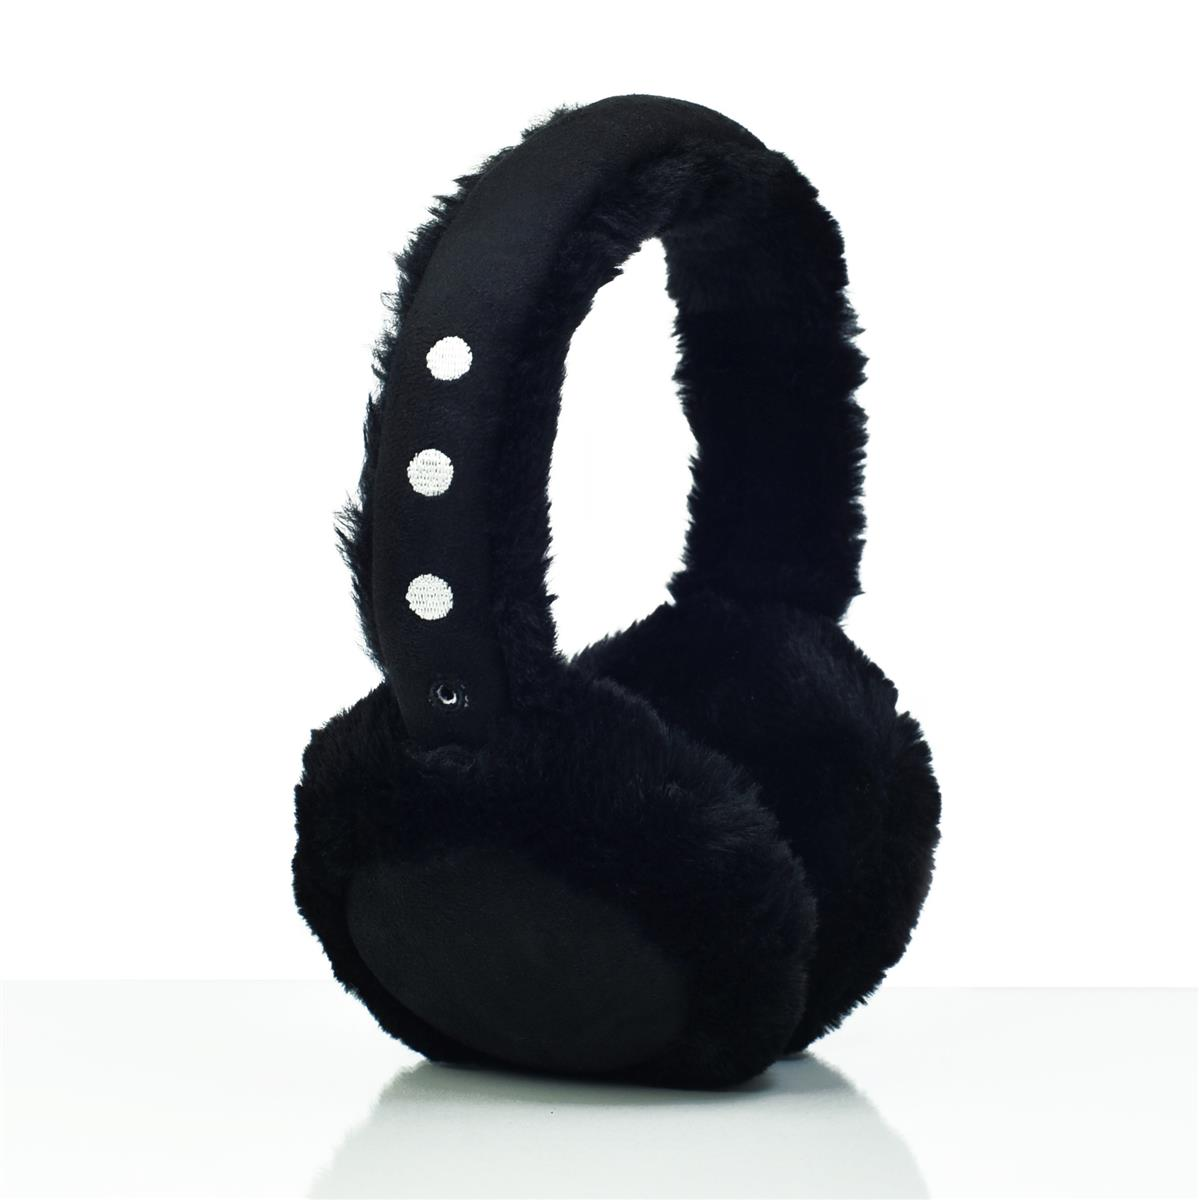 LEICKE Ohrenschützer-Kopfhörer On-ear Kopfhörer EP18122, schwarz